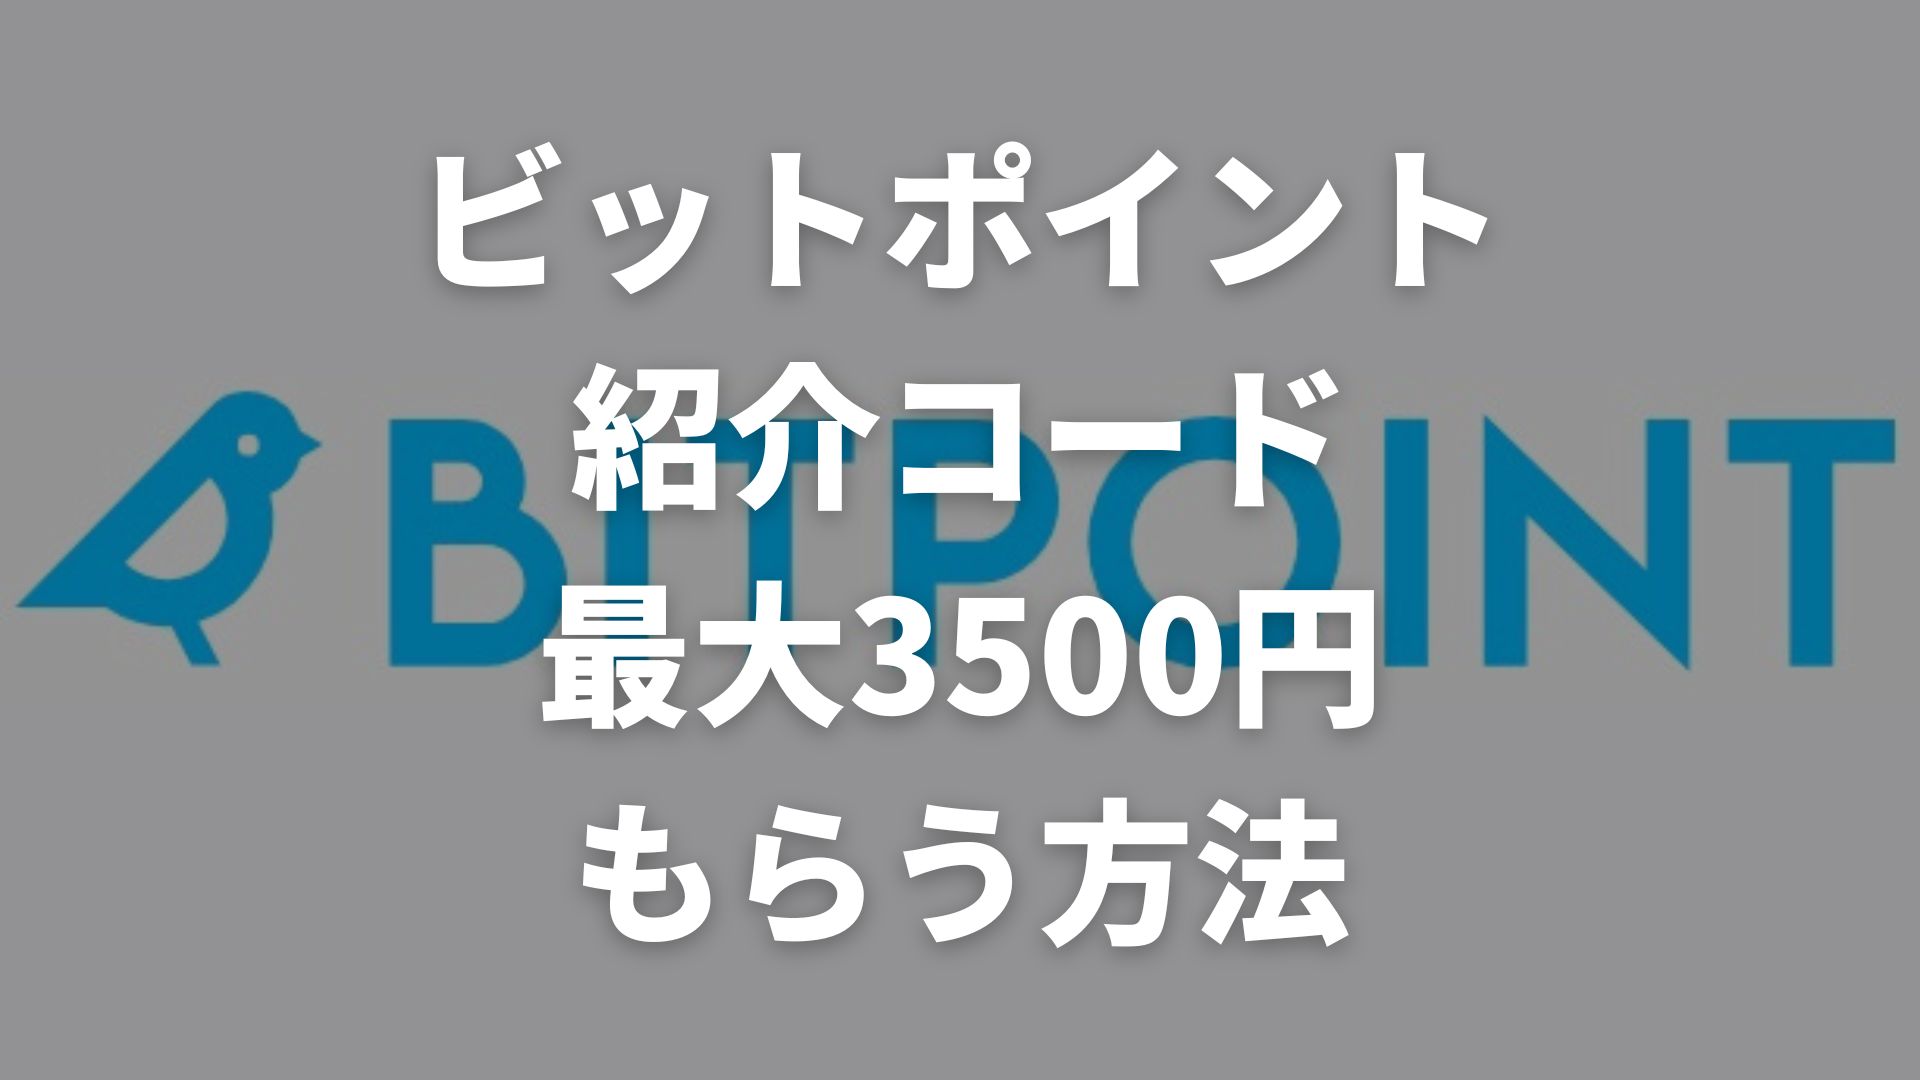 ビットポイント紹介コードと口座開設キャンペーンで3500円もらう方法